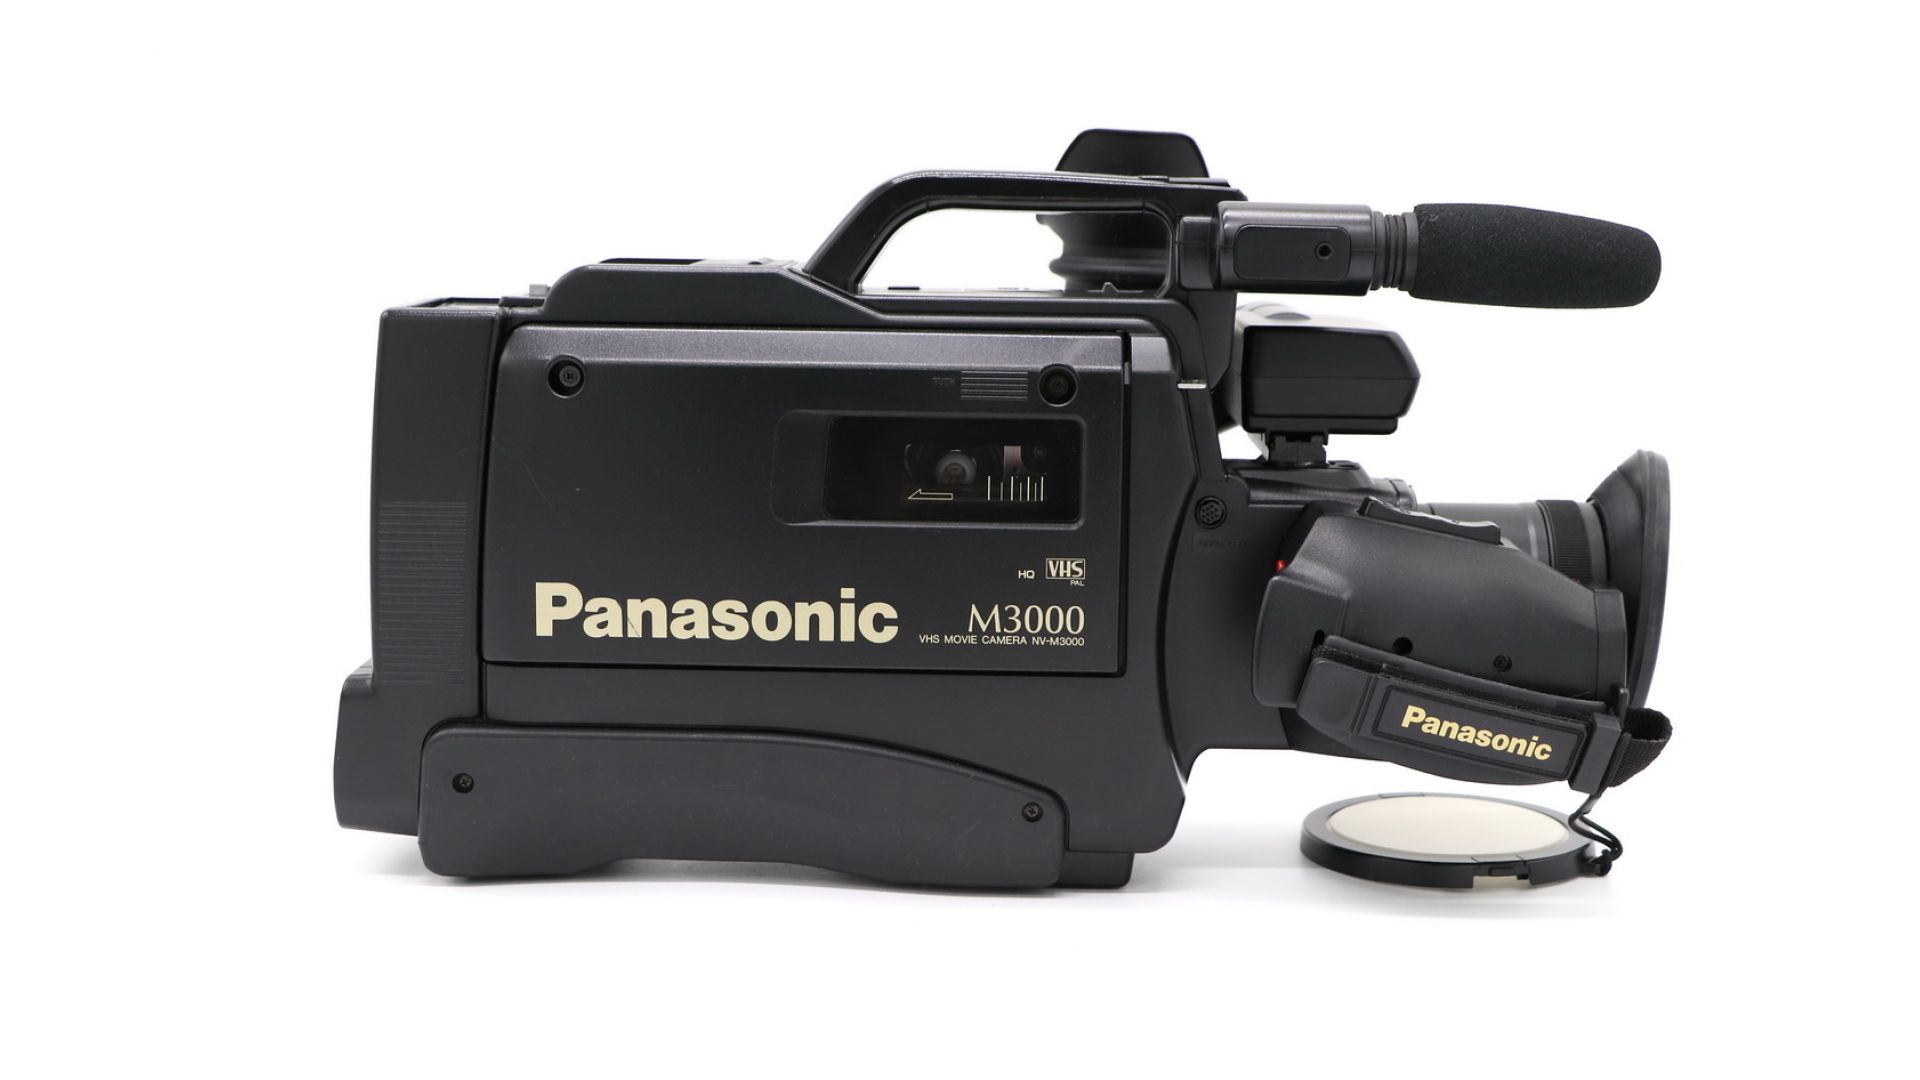 Видеокамера панасоник. Panasonic VHS NV-m3000. Видеокамера Panasonic m3000. Панасоник м 3000. Panasonic 3000 видеокамера VHS.